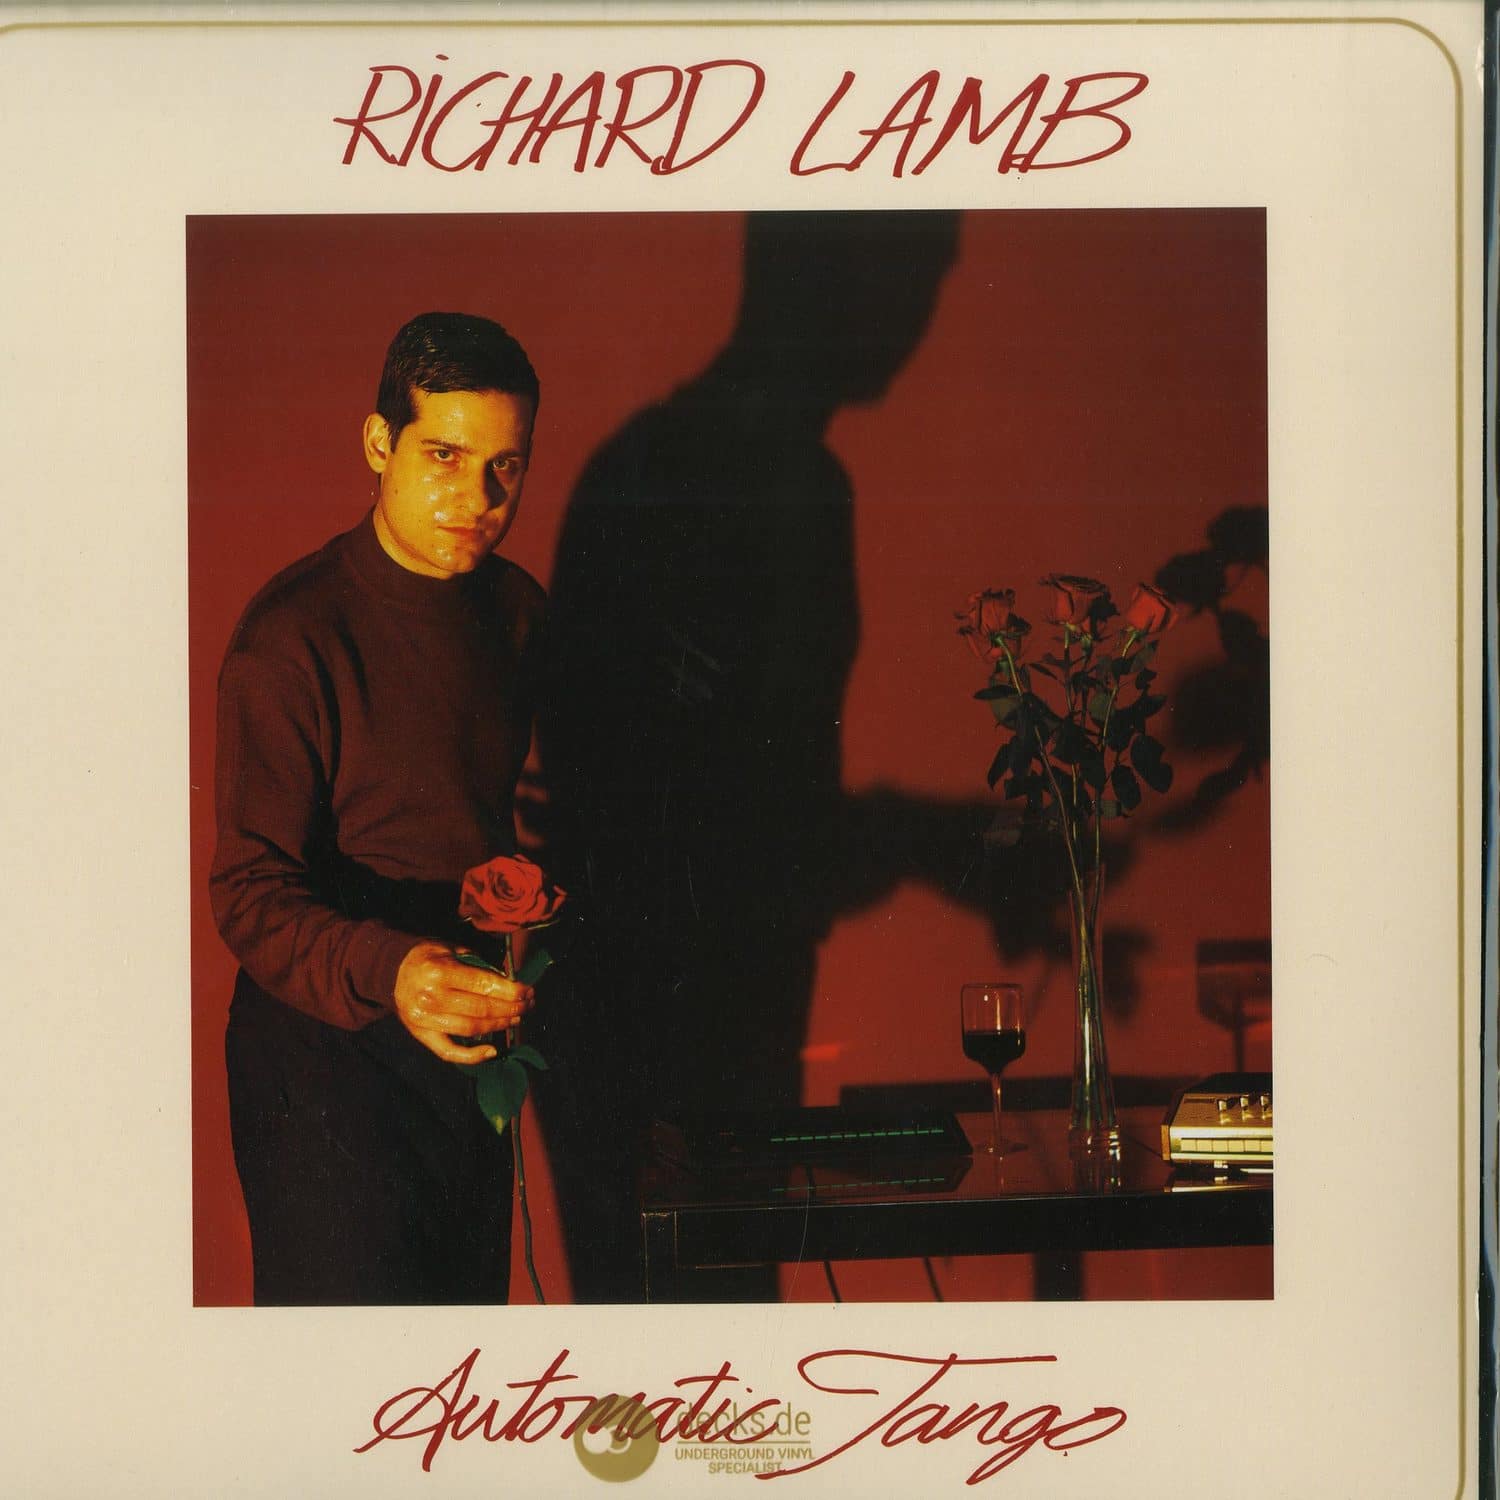 Richard Lamb - AUTOMATIC TANGO